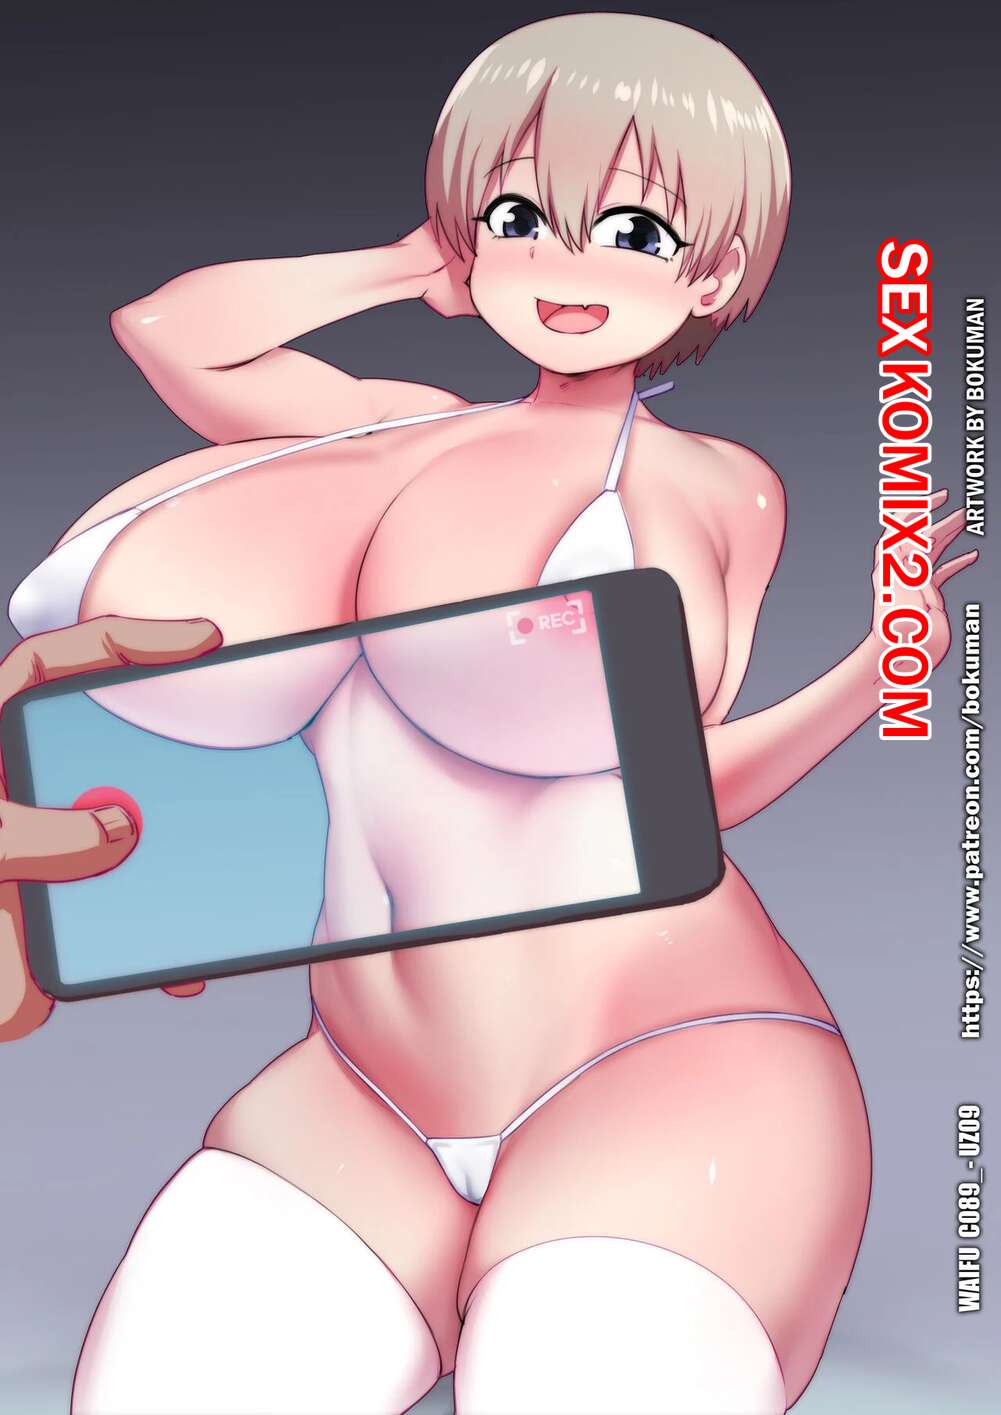 ✅️ Порно комикс Uzaki chan pack. Bokuman секс комикс артов и картинок |  Порно комиксы на русском языке только для взрослых | sexkomix2.com